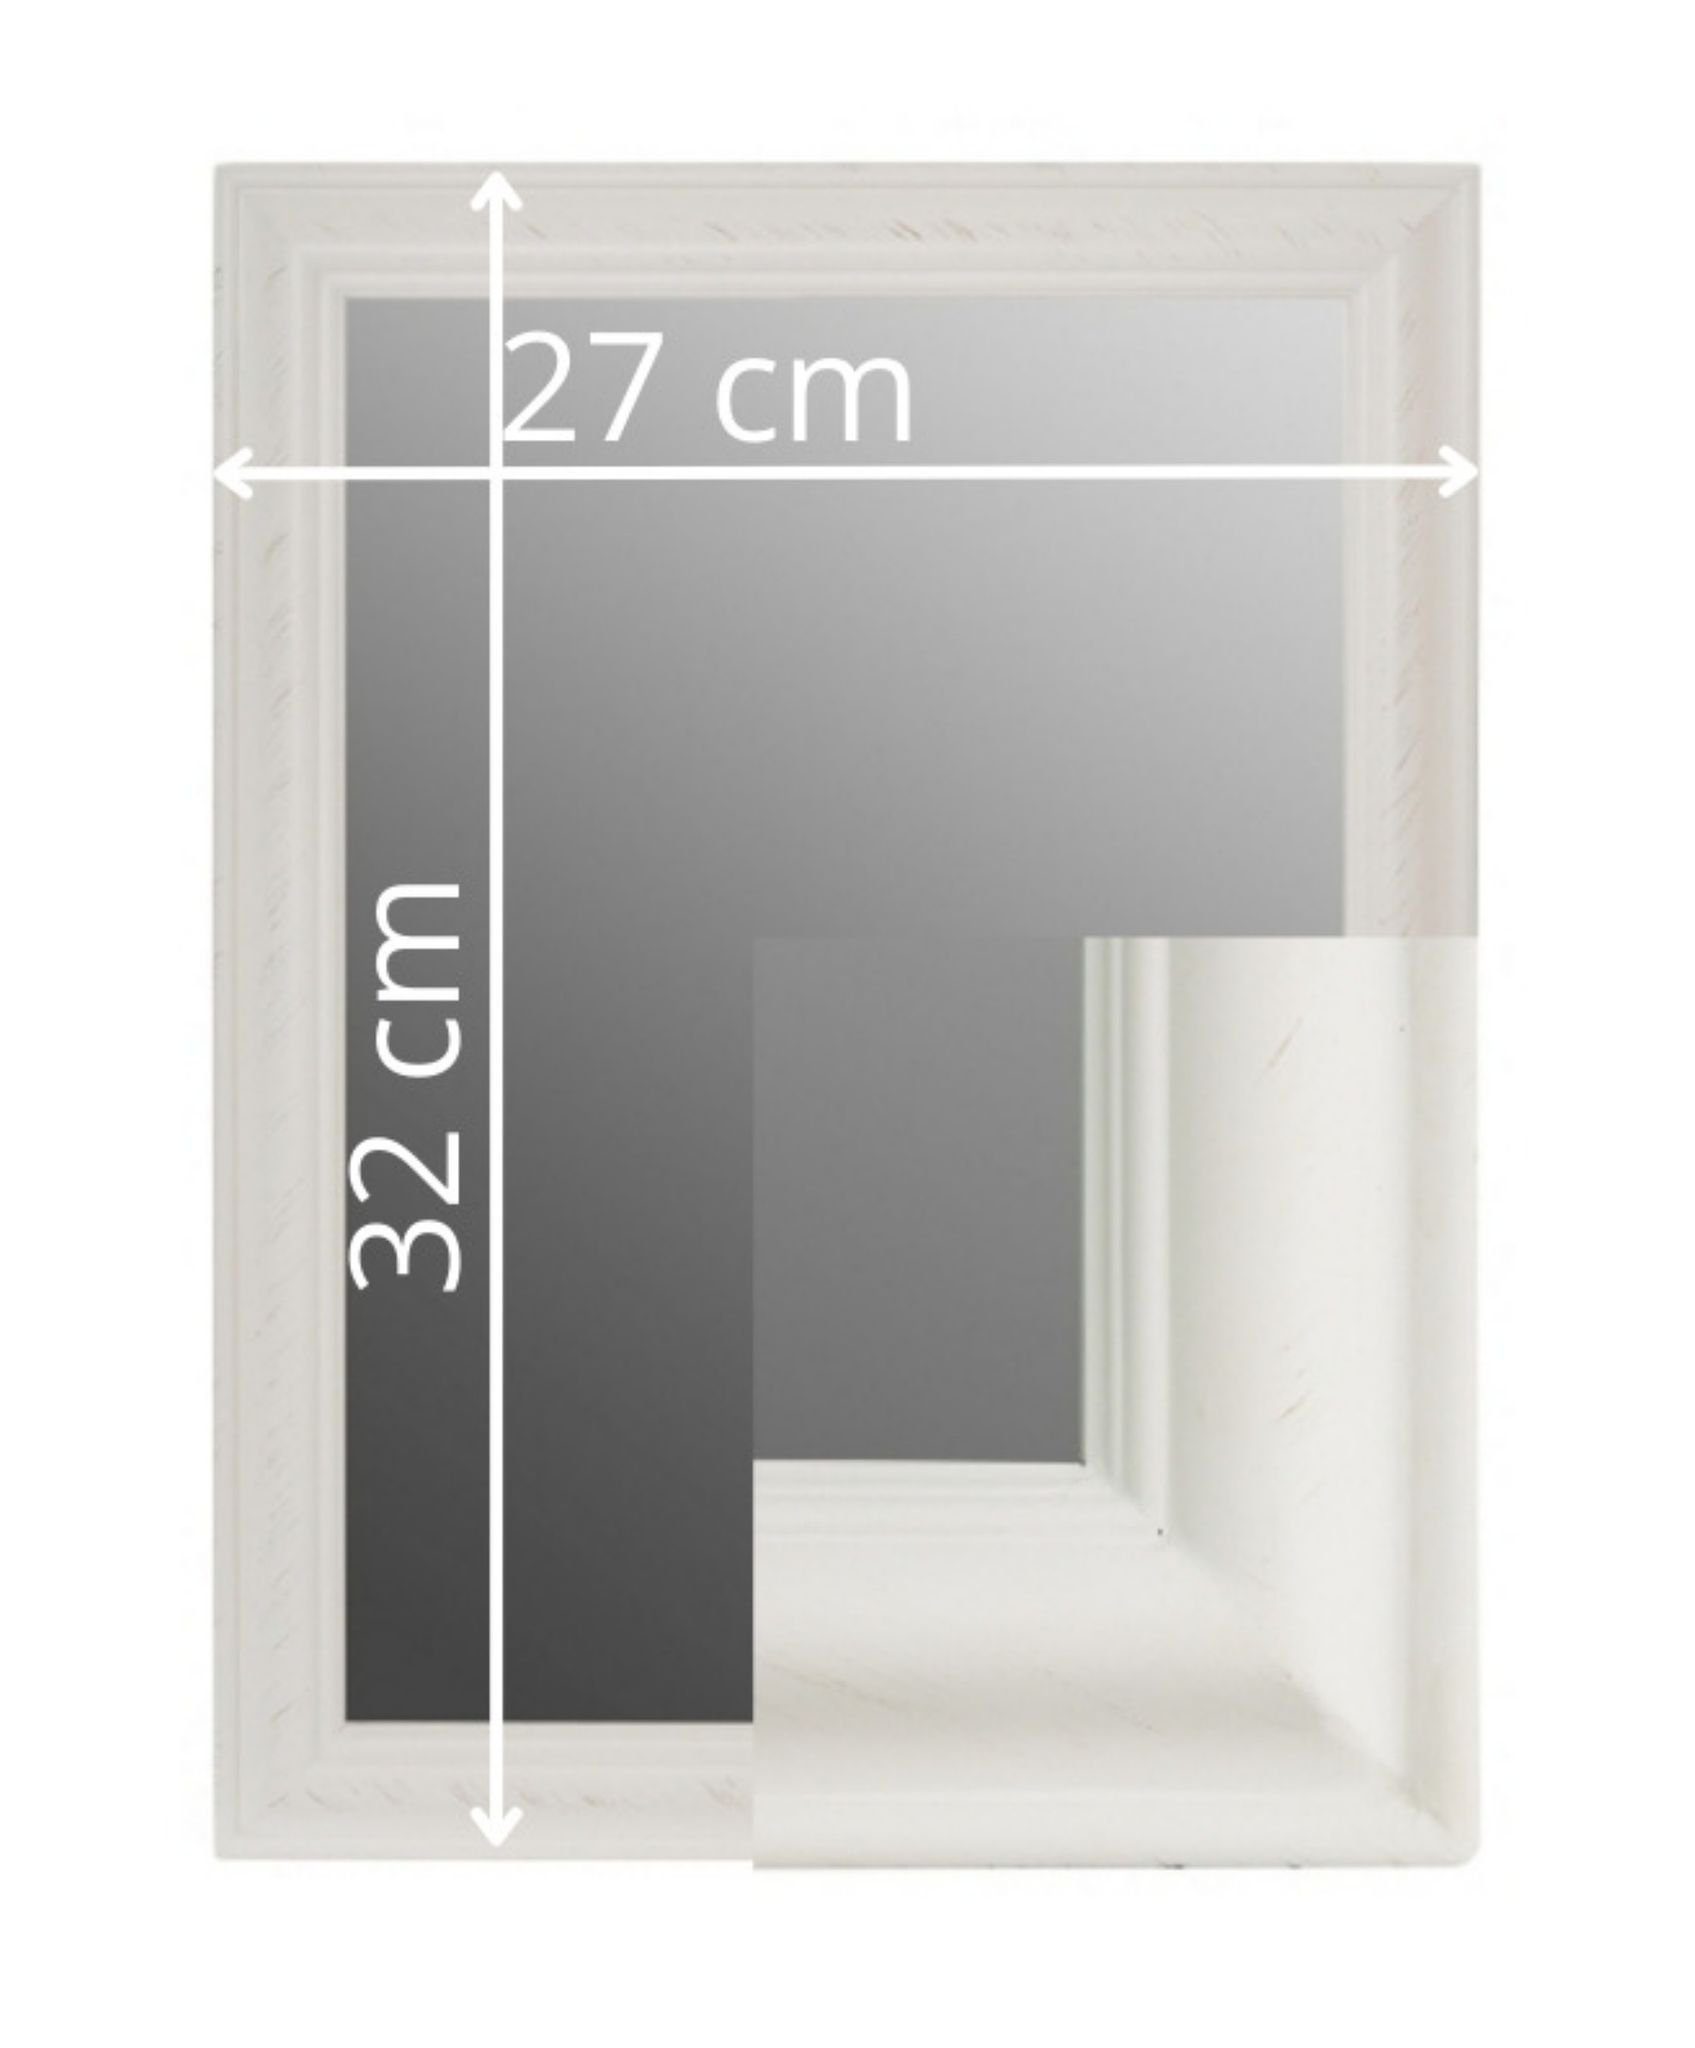 elbmöbel Wandspiegel Wandpiegel schlicht cm weiß Badspiegel Spiegel, kleiner Wandspiegel Spiegel: Weiß | Schminkspiegel Badspiegel 32x27x3 weiß 32x27x3